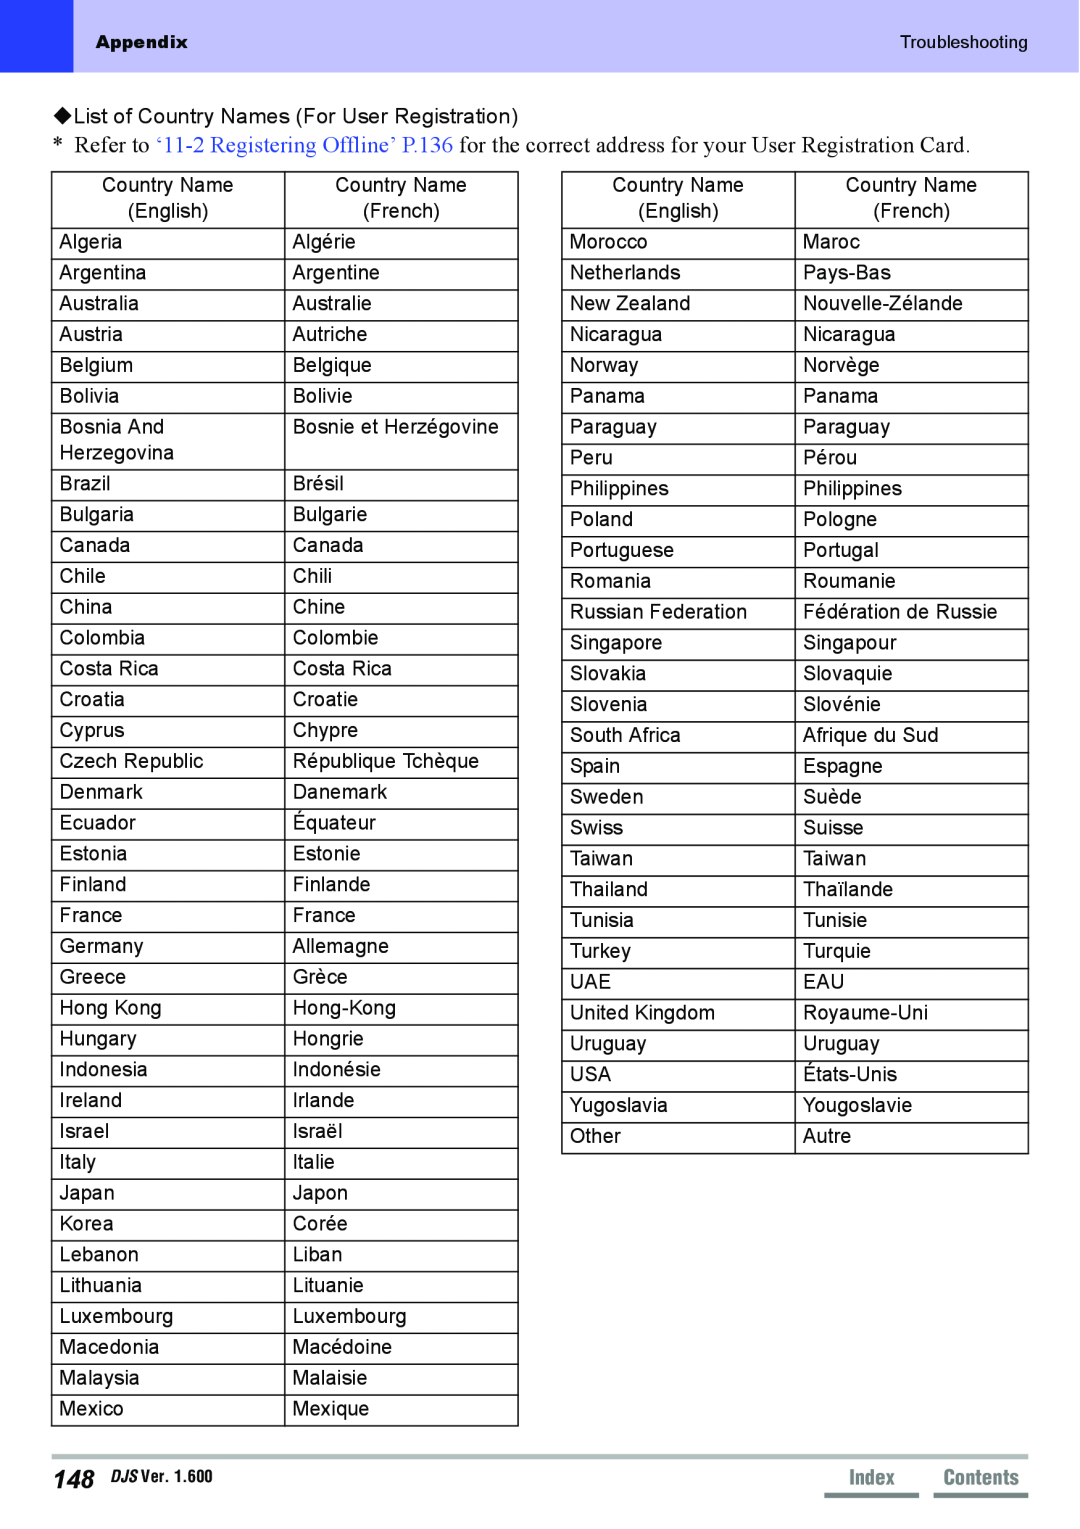 Pioneer SVJ-DL01D, SVJ-DS01D manual List of Country Names For User Registration, Index 